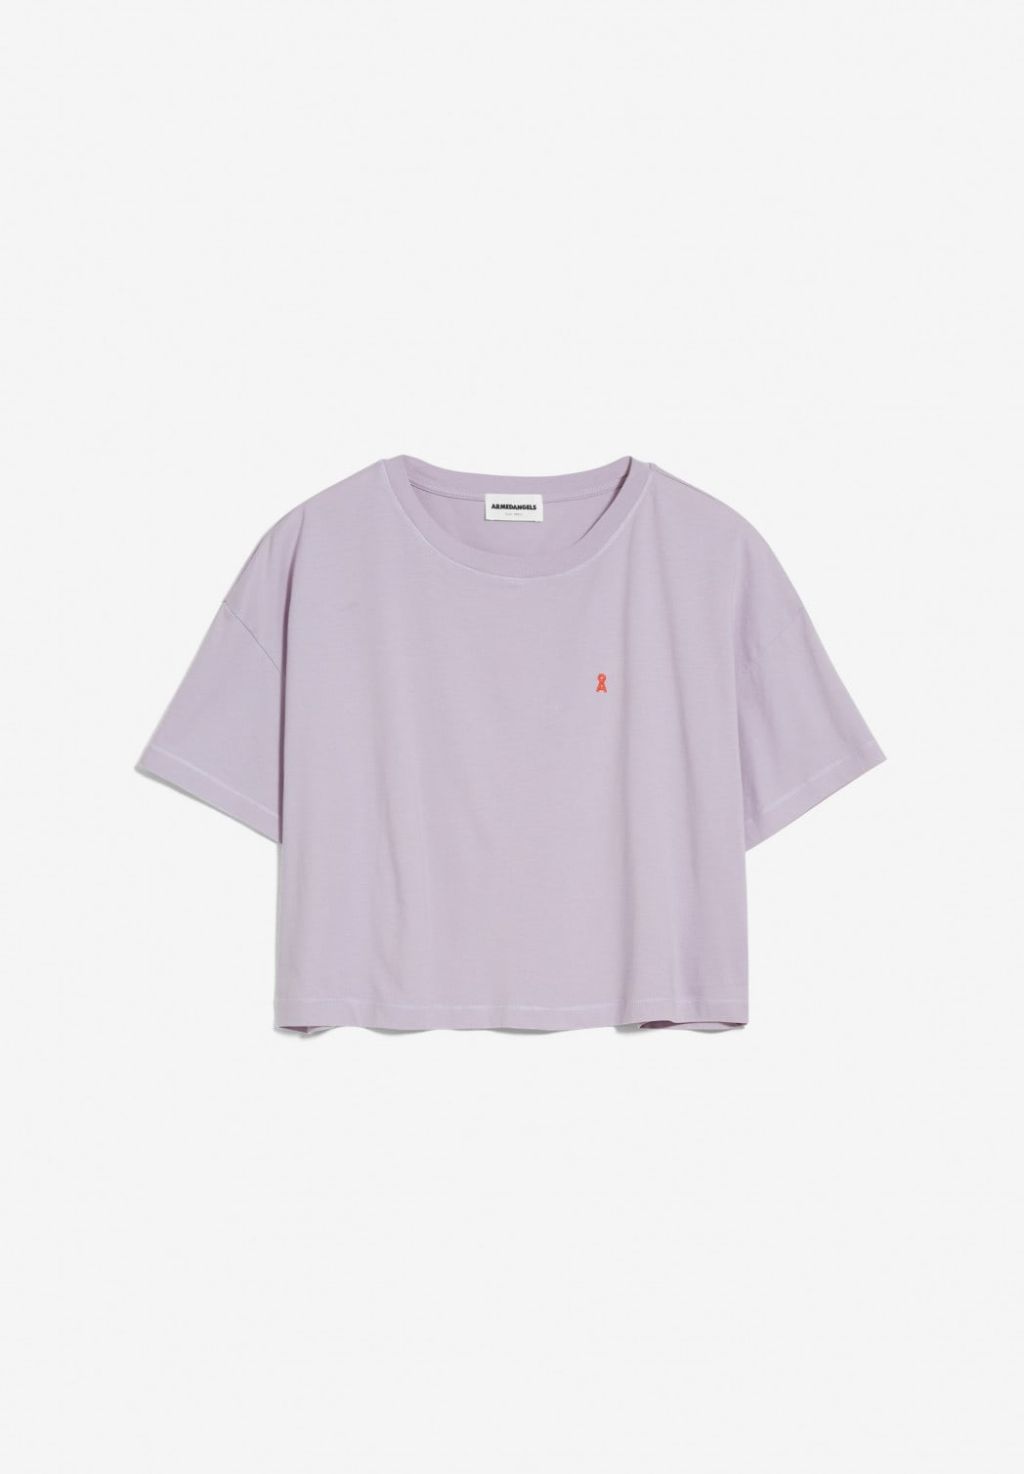 CHAARLOTTE T-Shirt aus Bio-Baumwolle purple noise XS